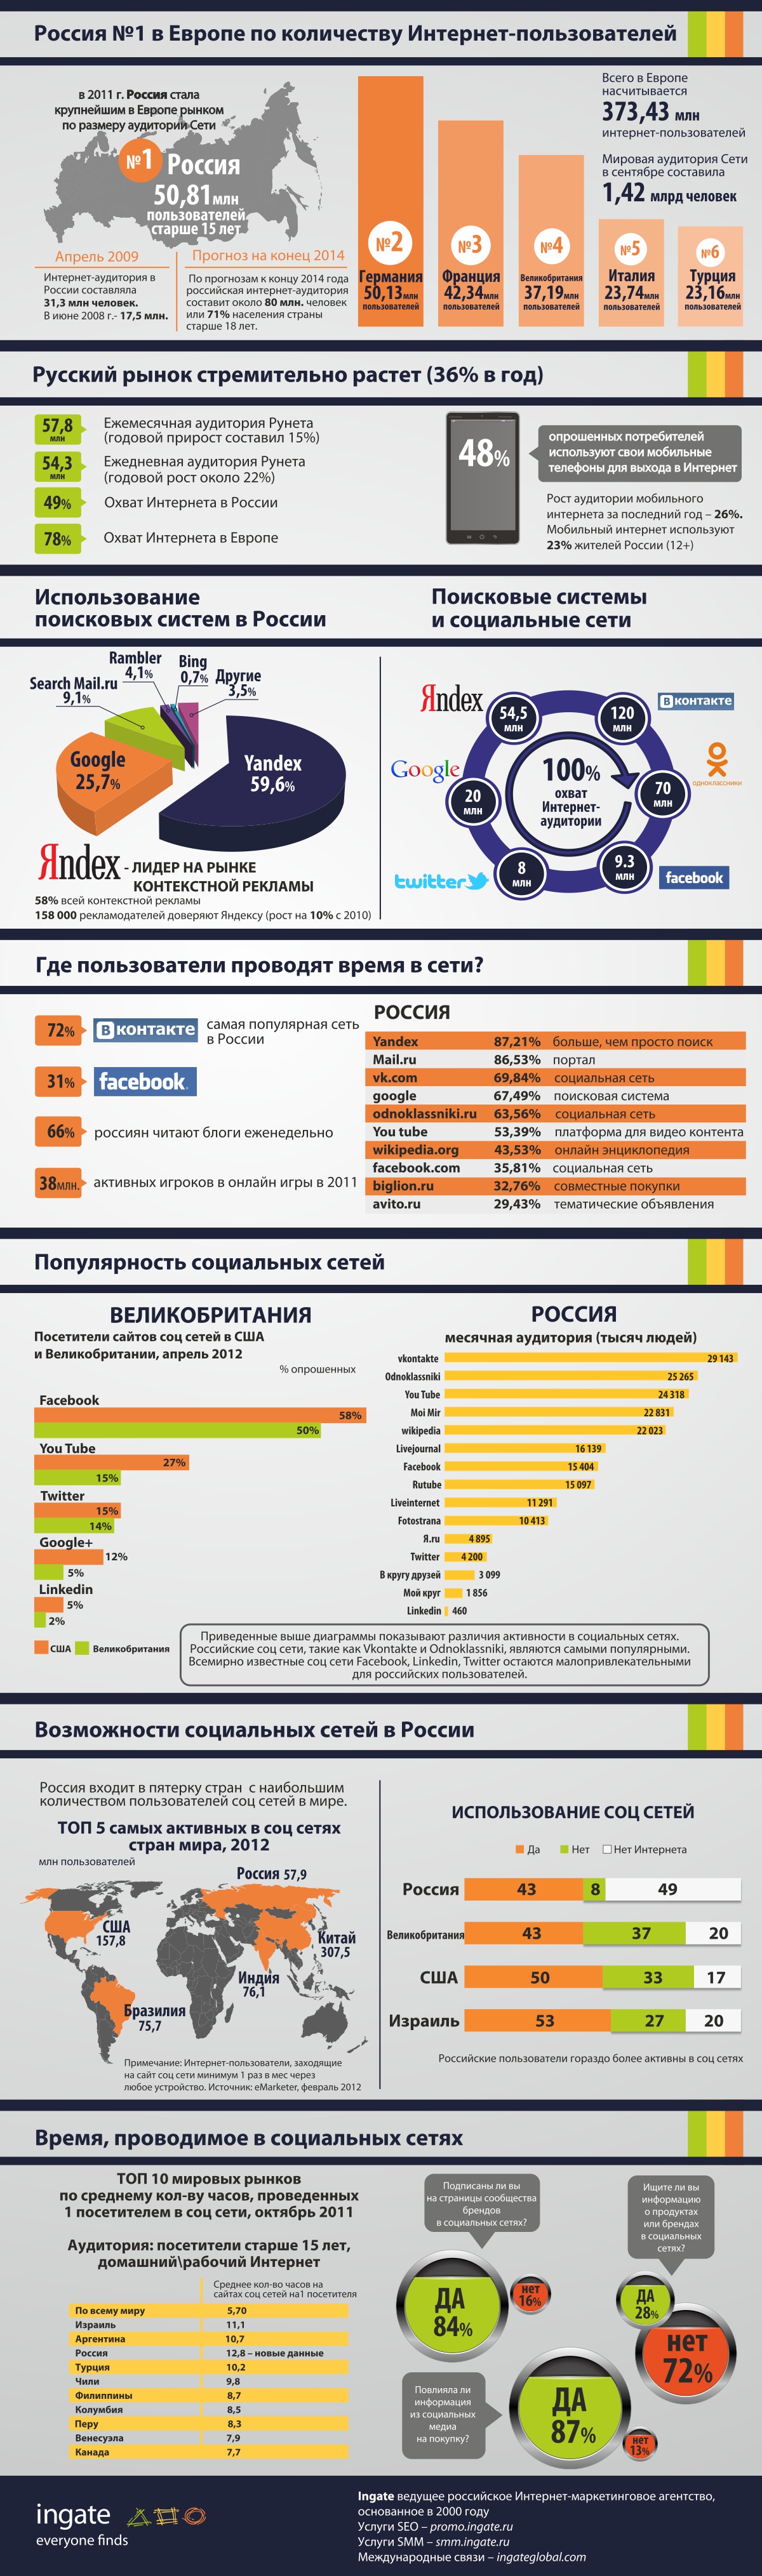 Инфографика: интернет-пользователи в России